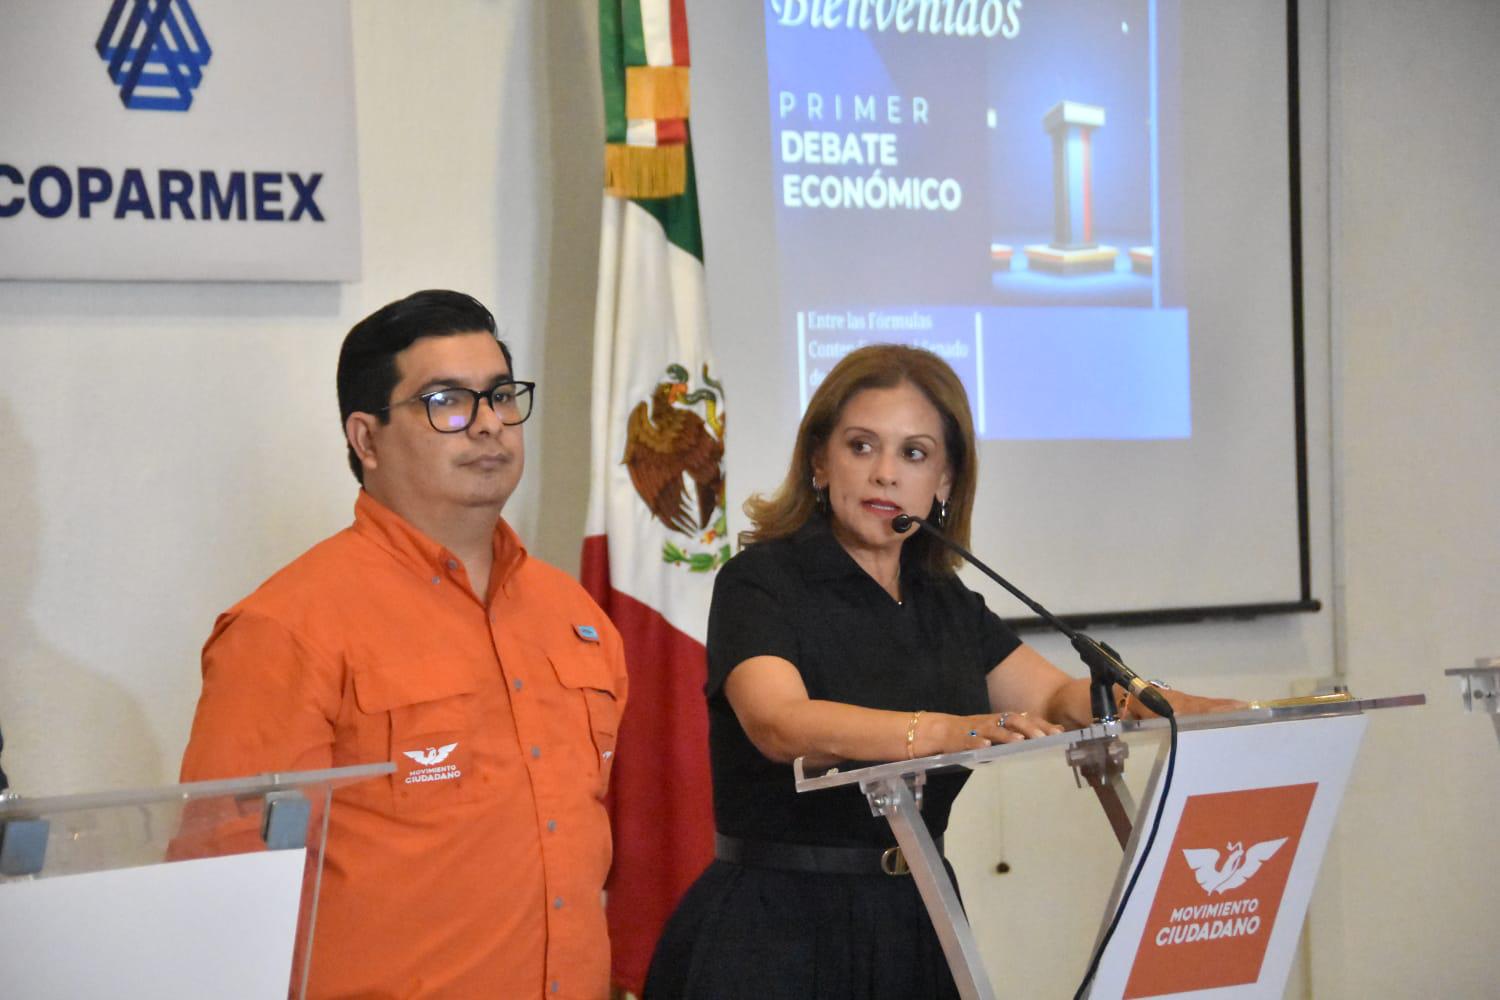 $!Desairan Morena, Verde y PT debate económico organizado por Coparmex